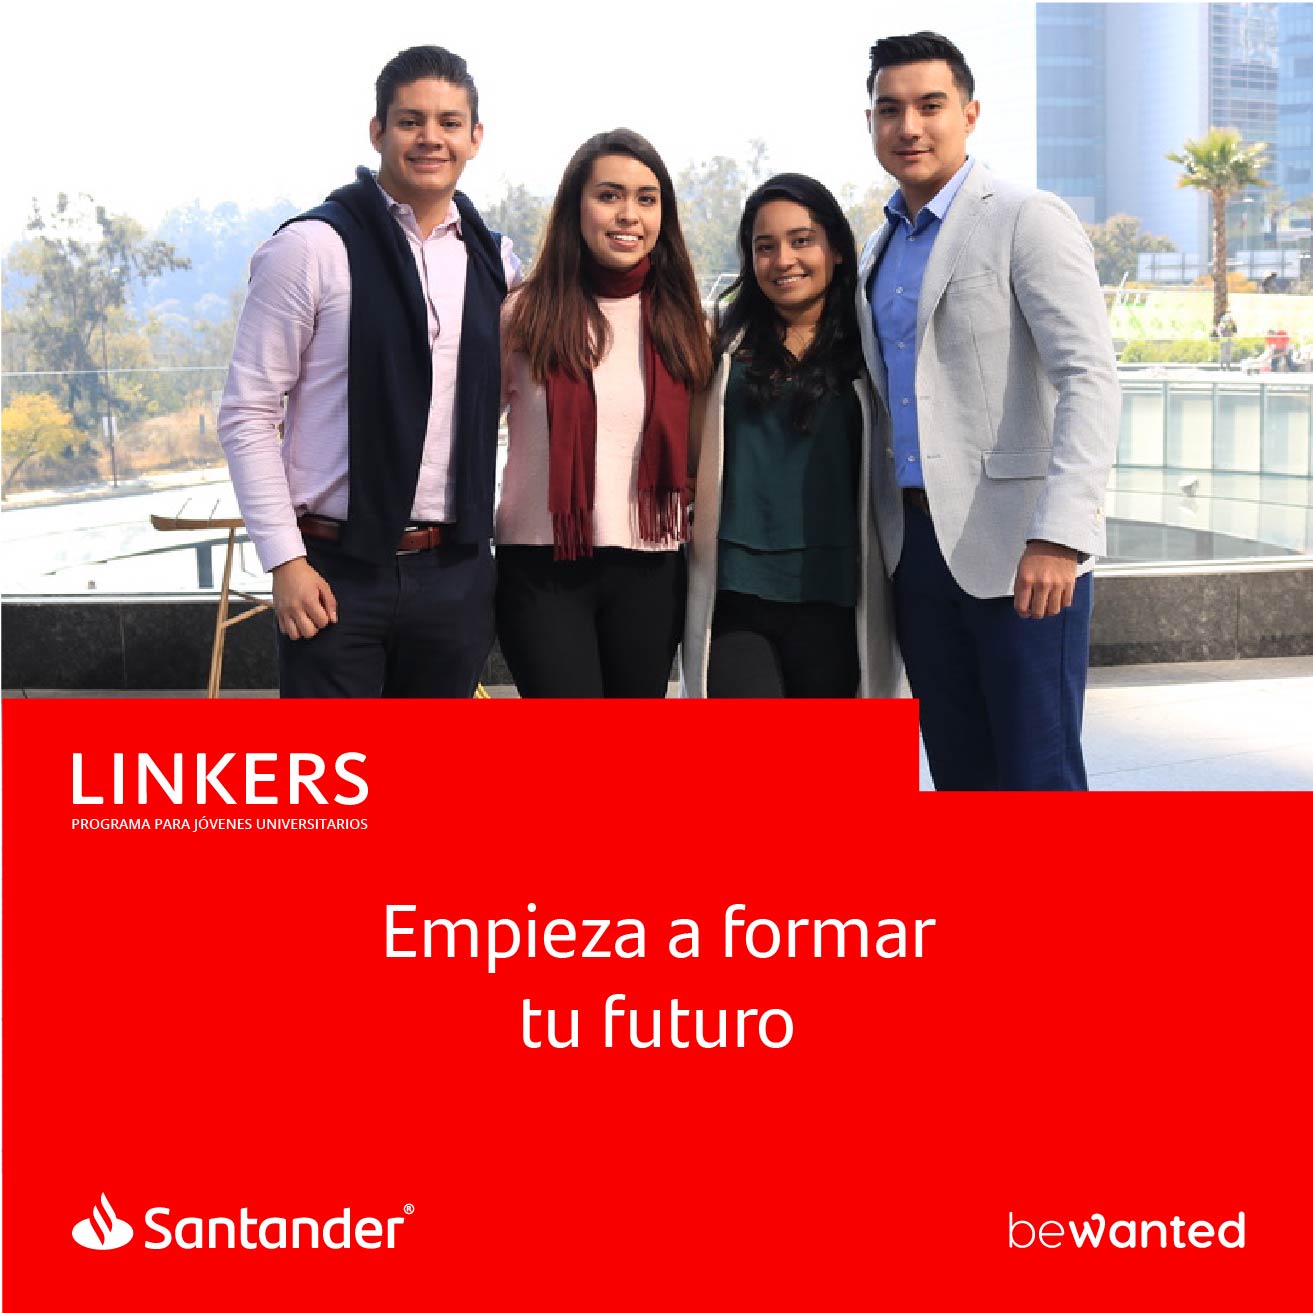 Linkers de Santander